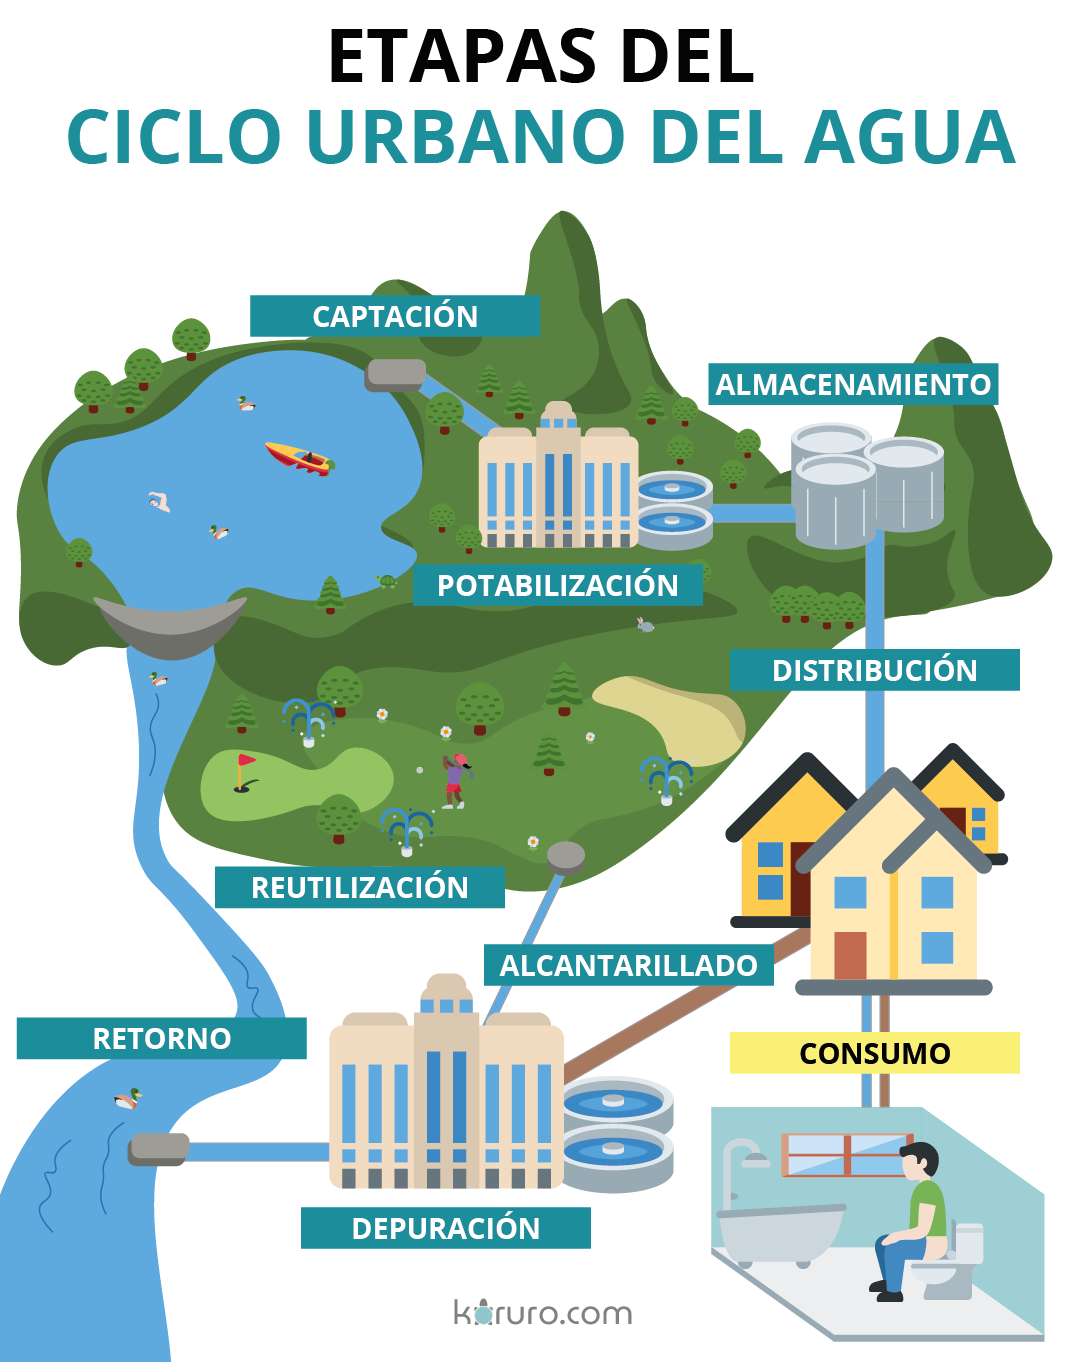 procesos del ciclo del agua urbano